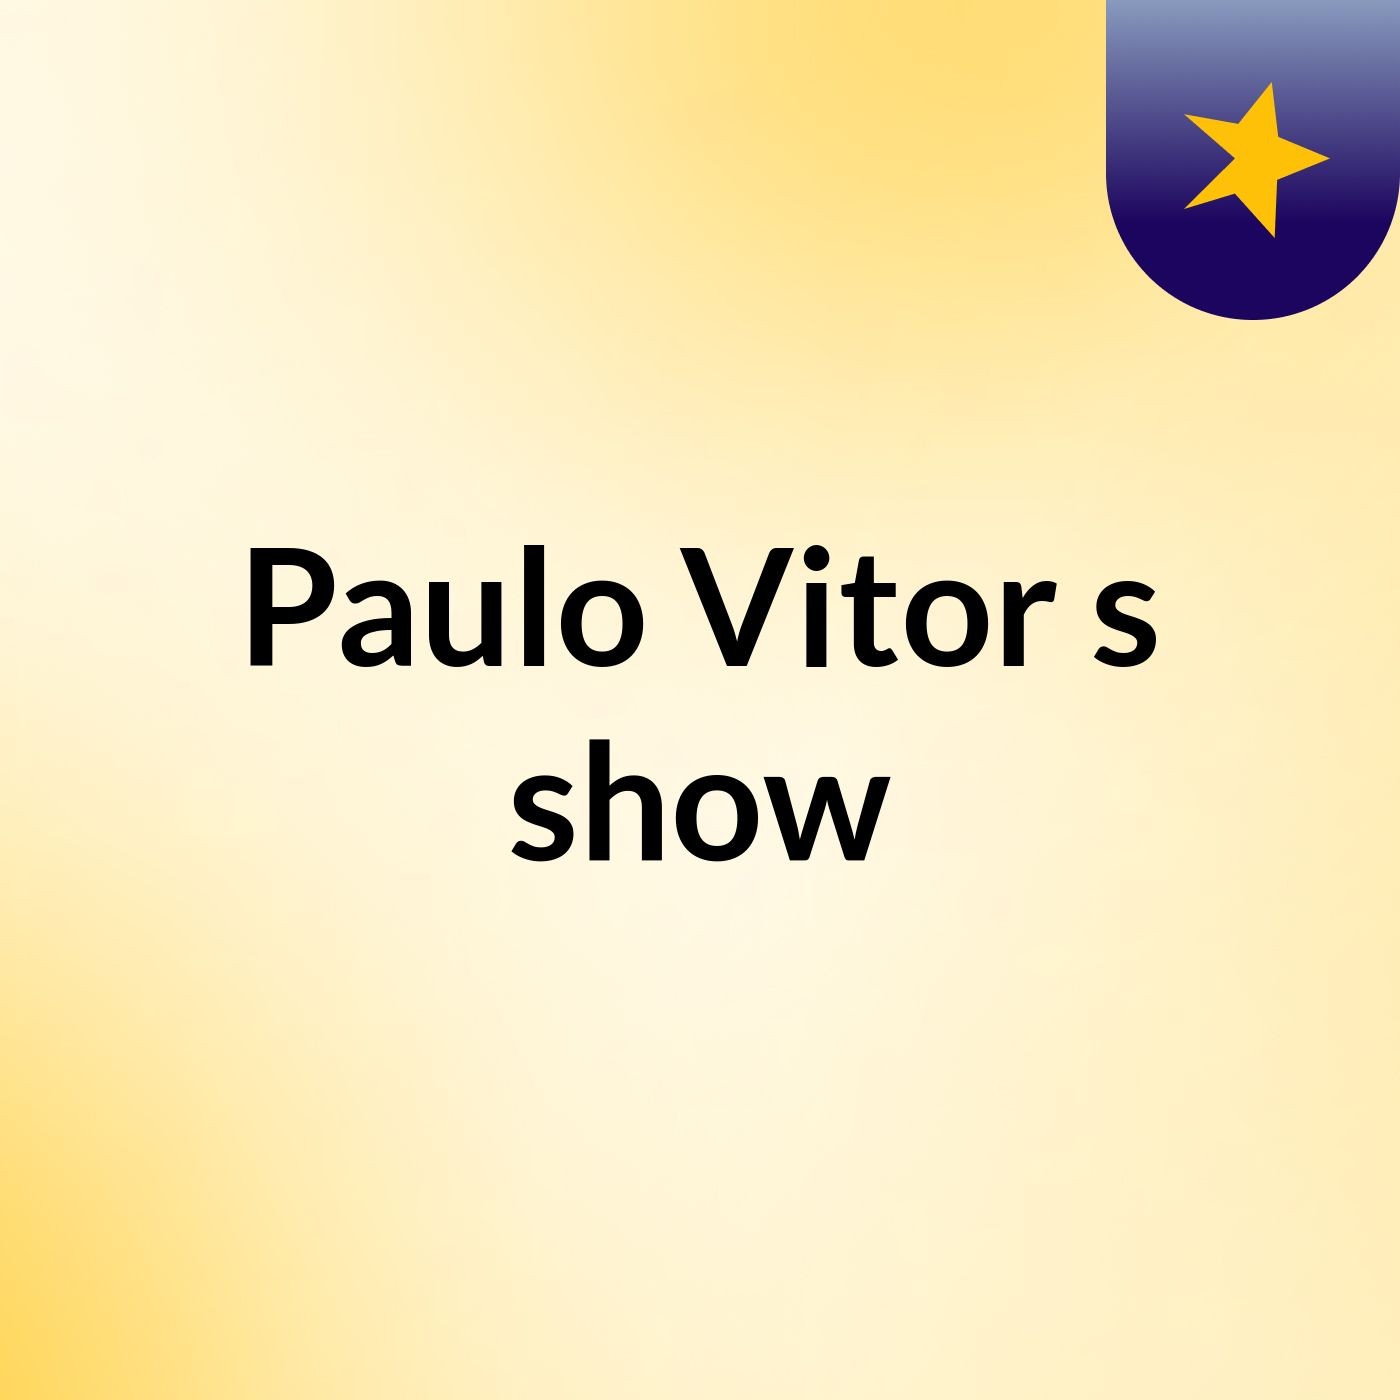 Paulo Vitor's show